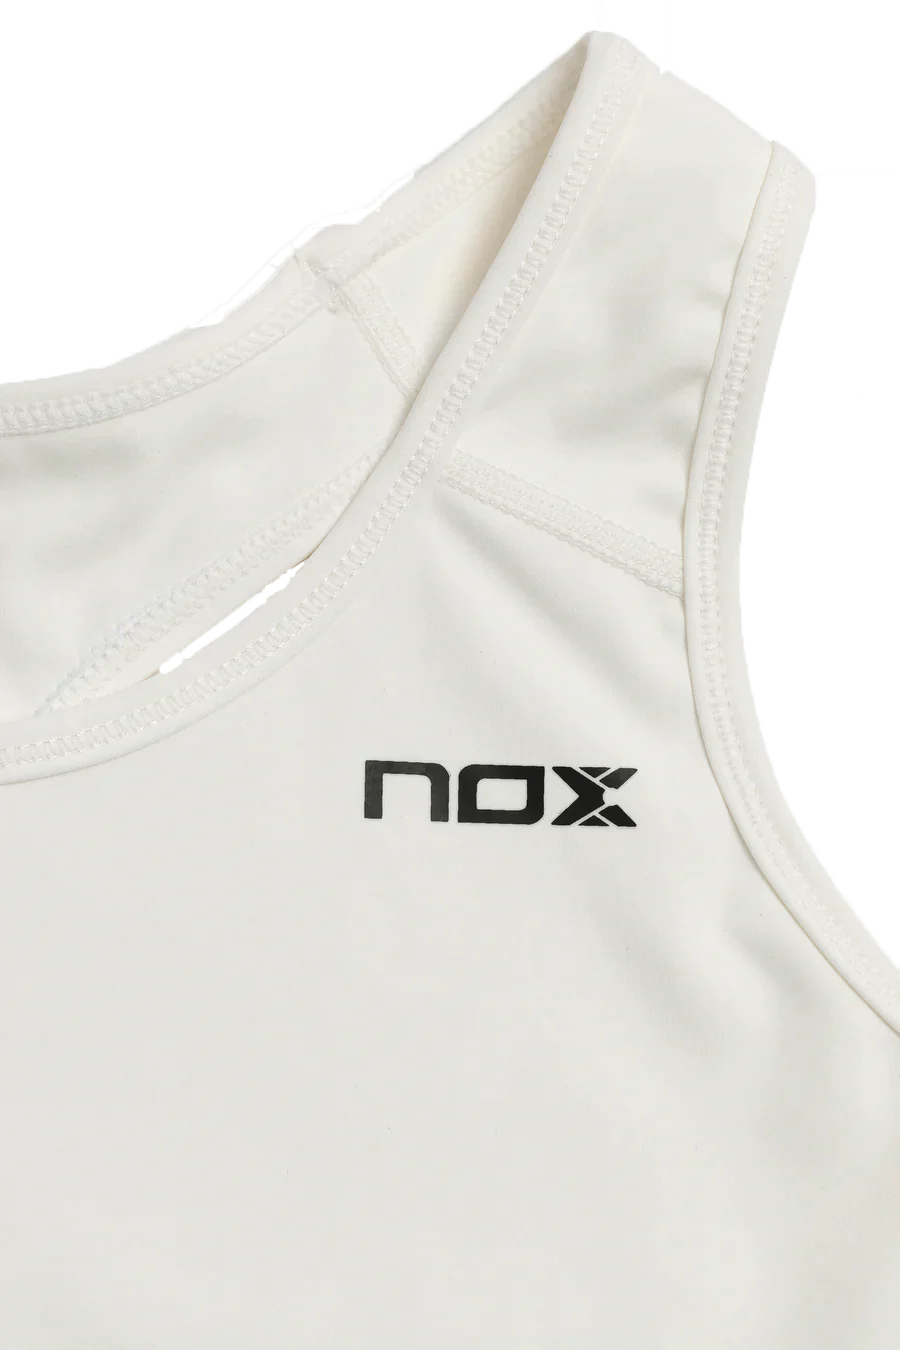 Top Nox Pro 5